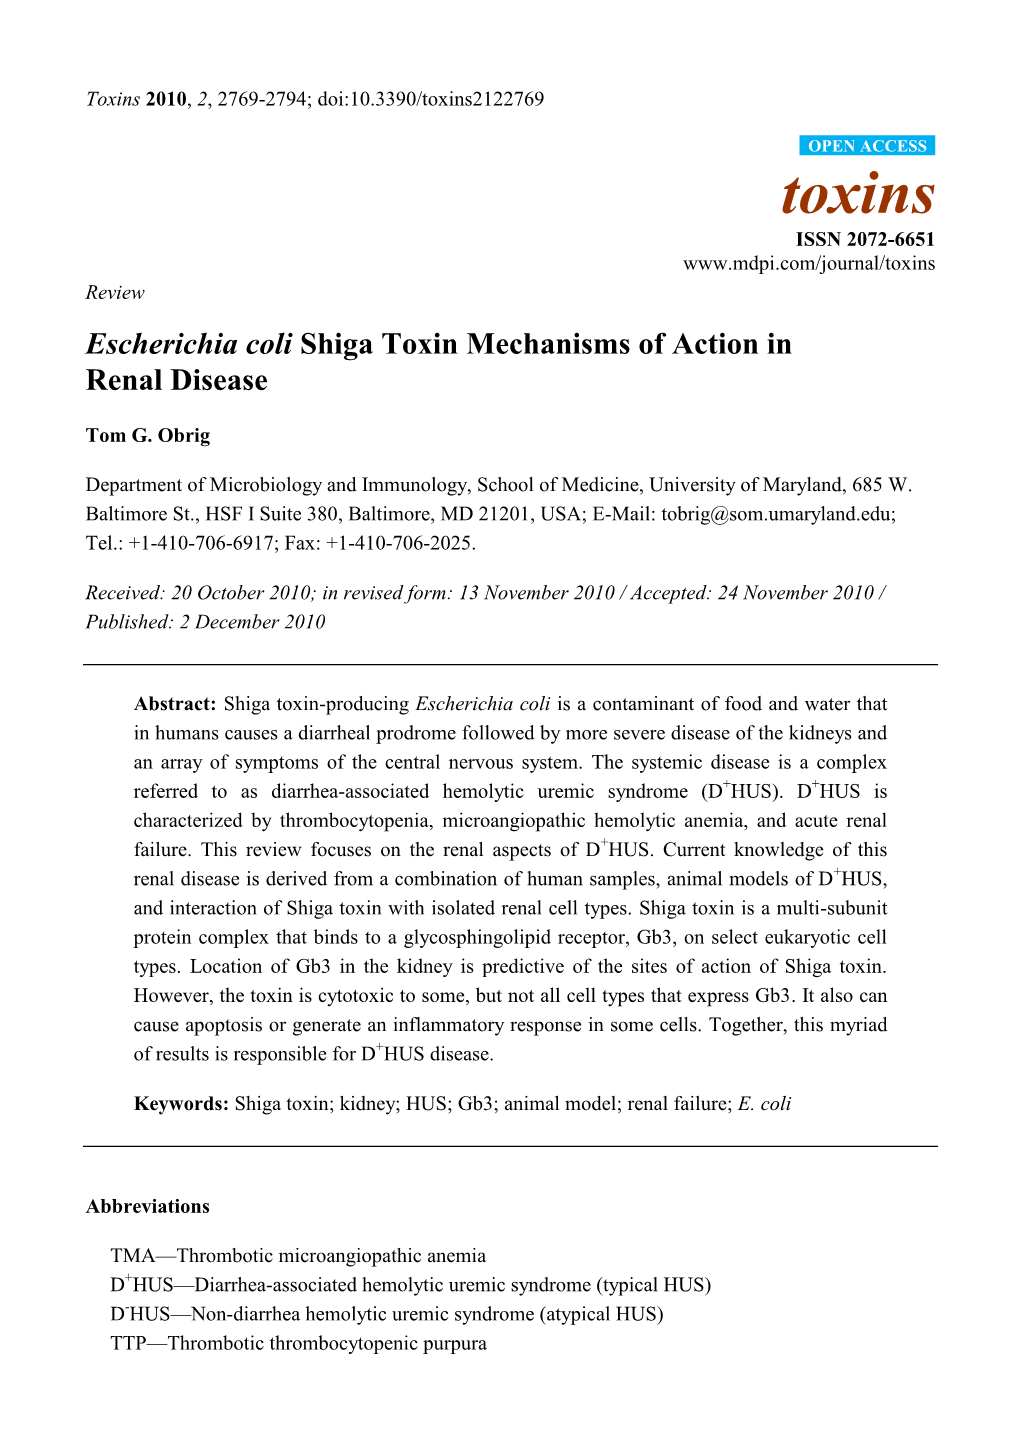 Escherichia Coli Shiga Toxin Mechanisms of Action in Renal Disease